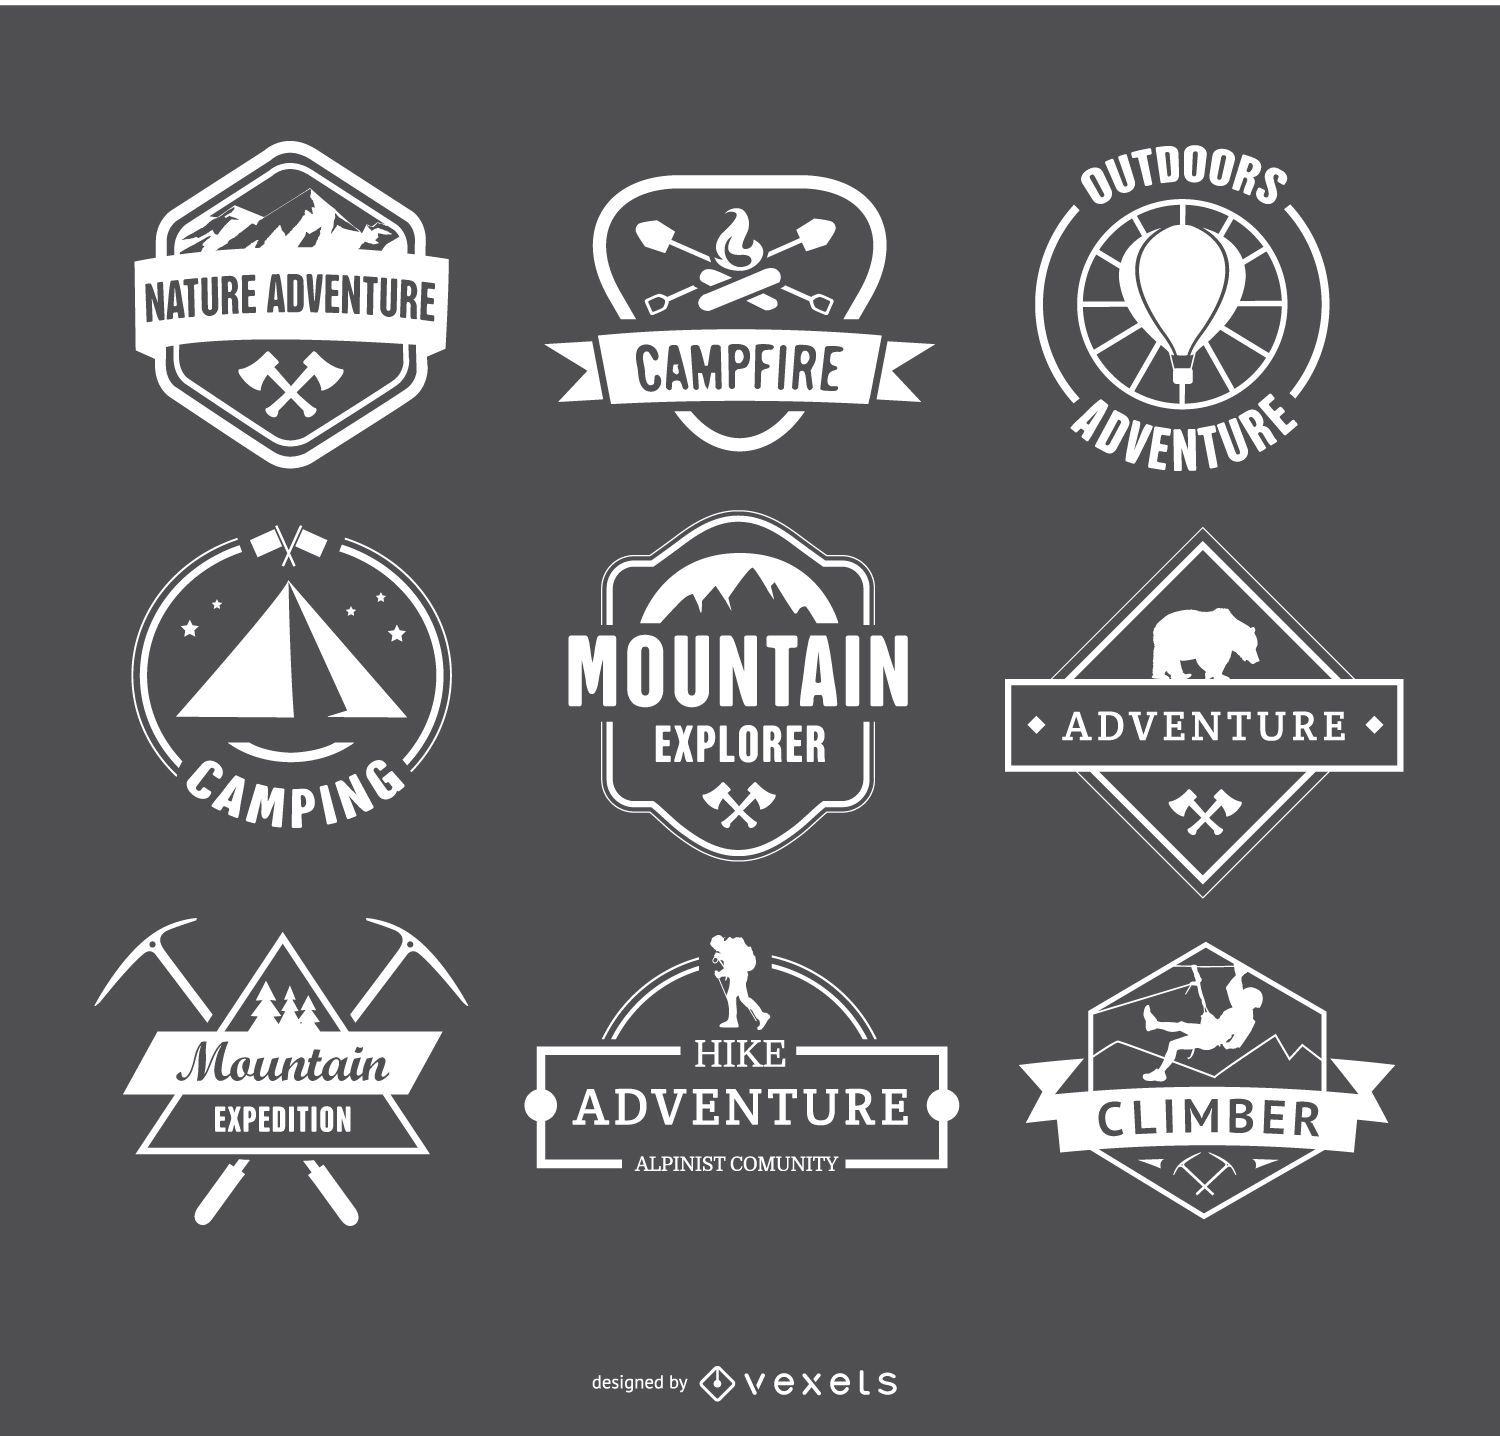 Retro Camping Logos and Hiking Badges Emblems